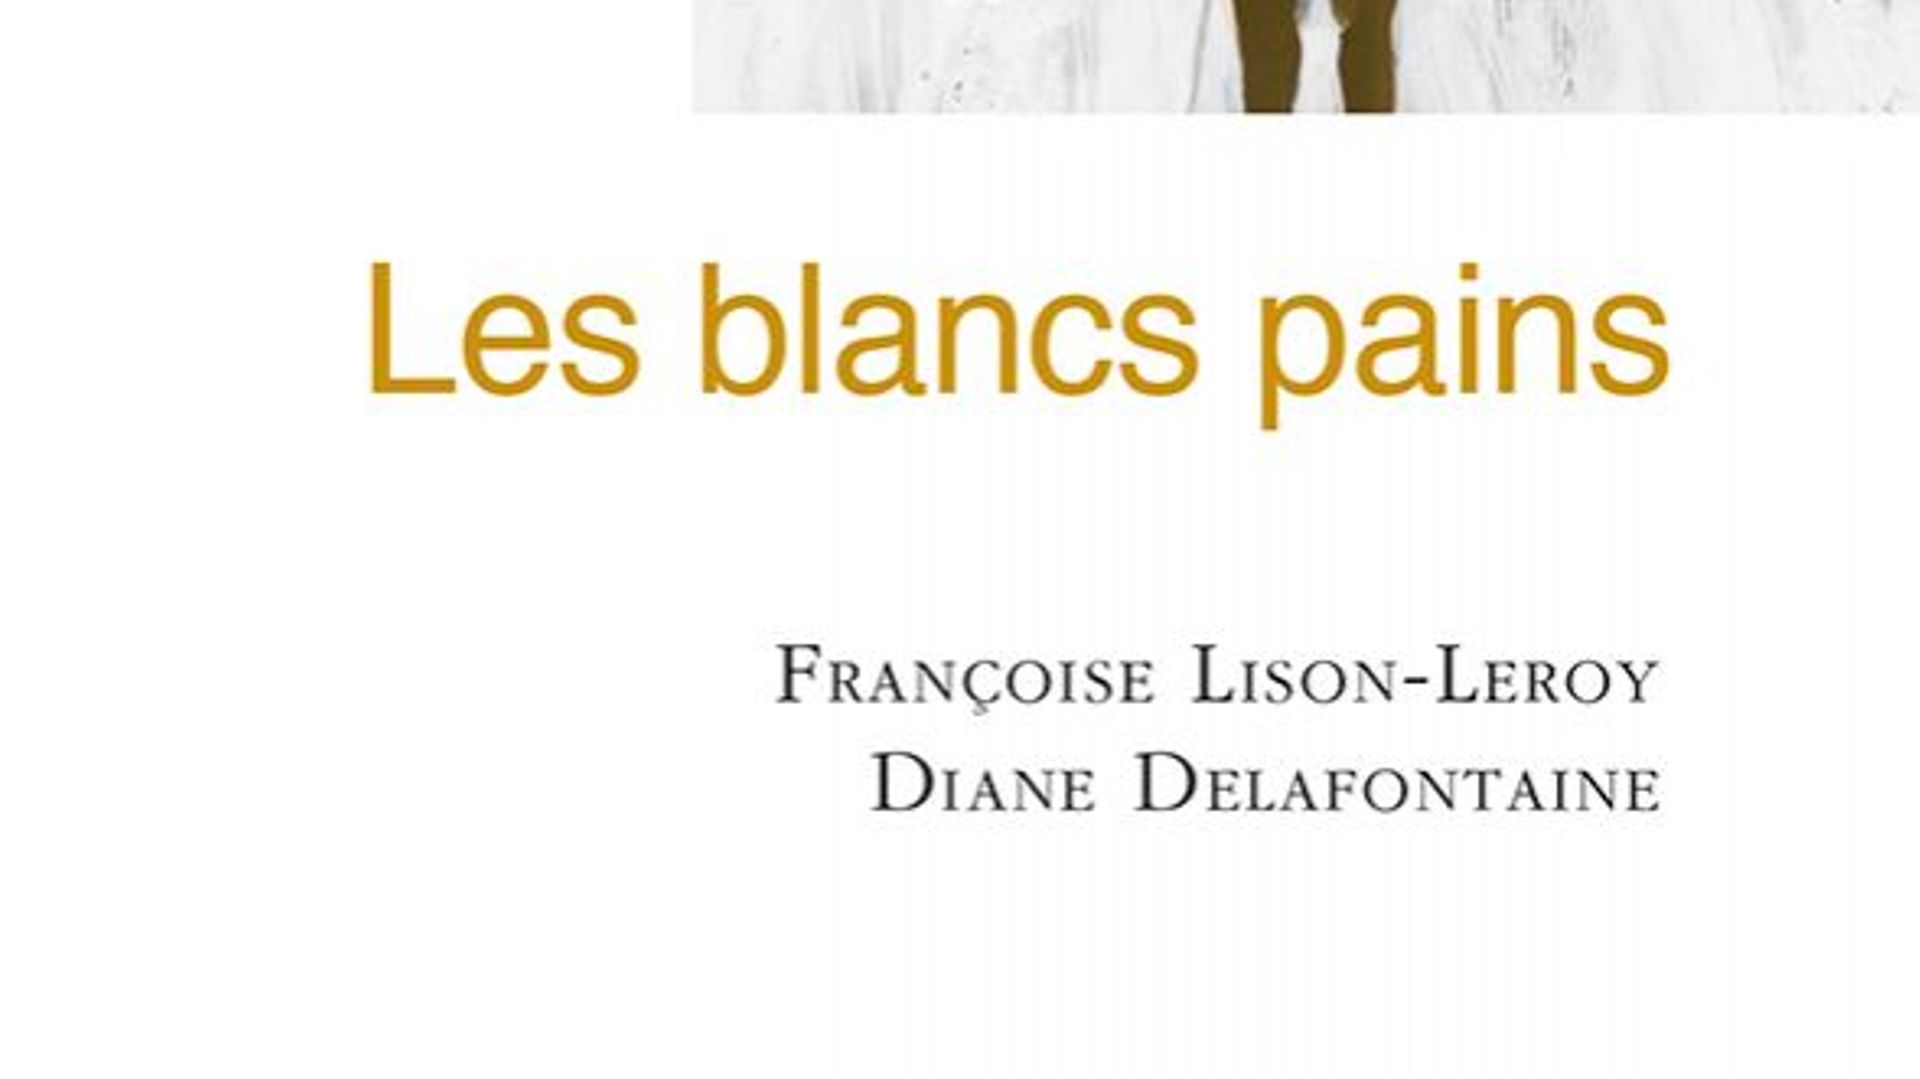 Les blancs pains, Françoise Lison-Leroy